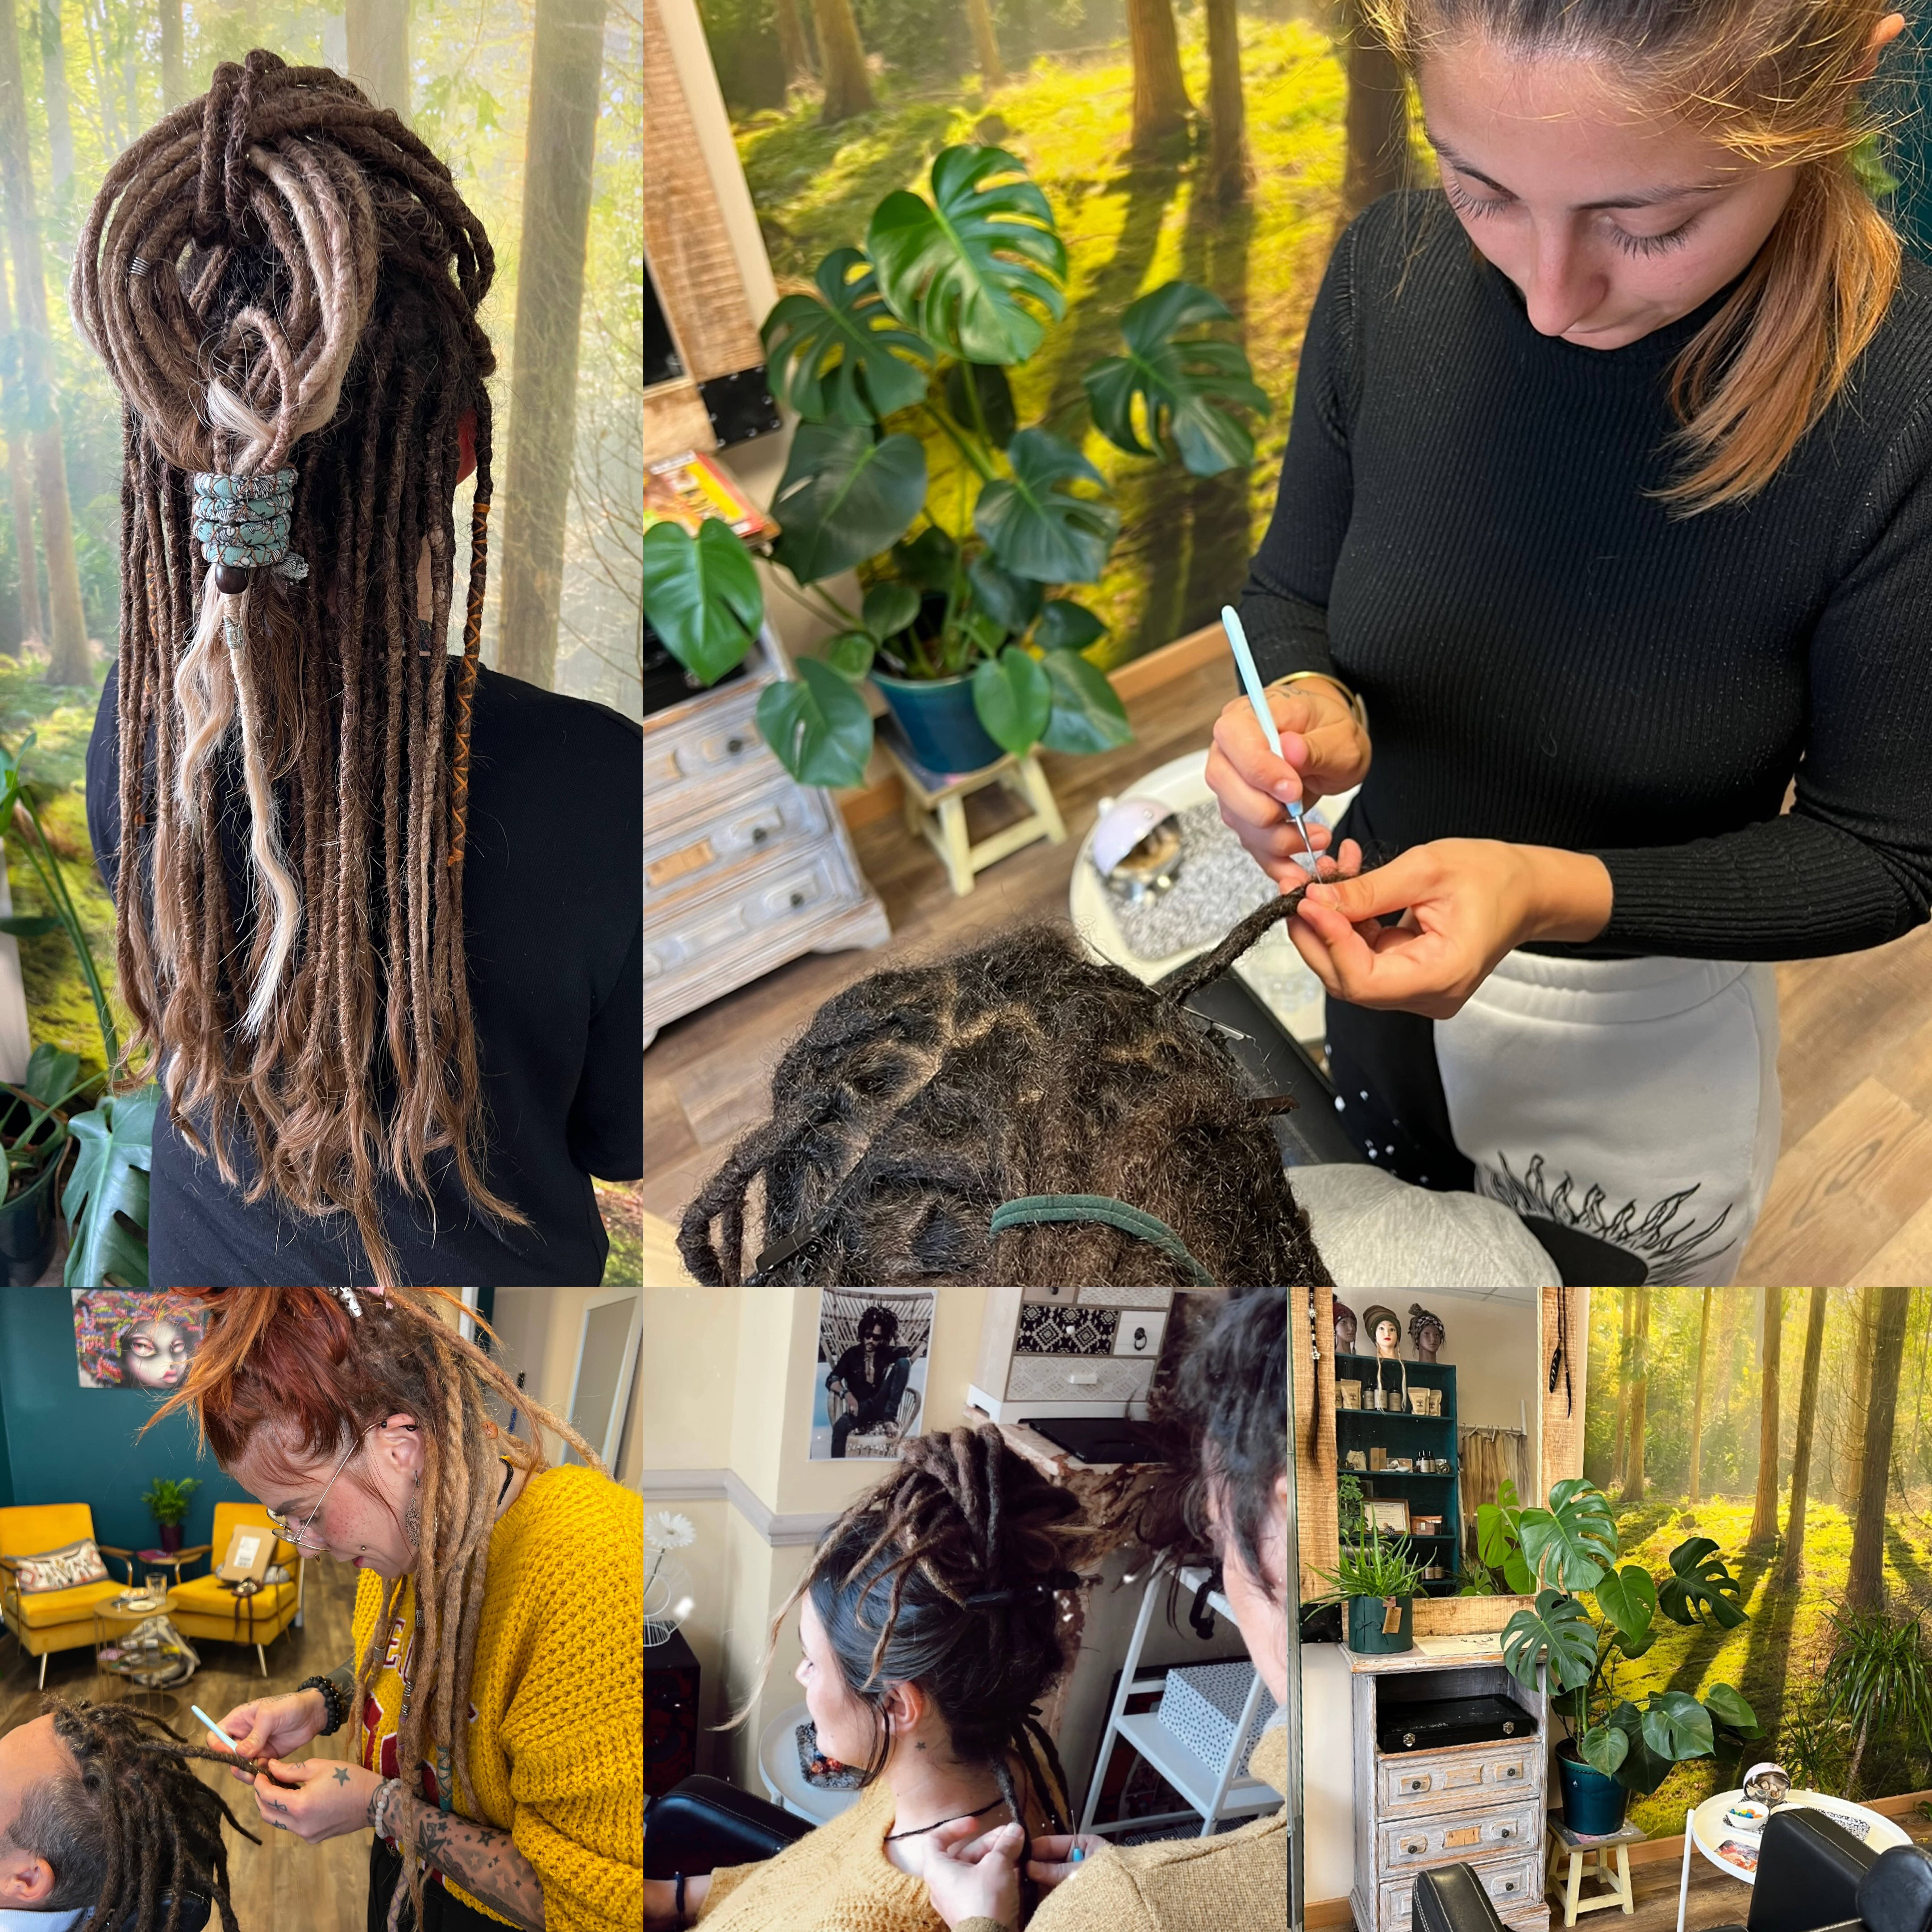 Formation pour apprendre la création et l'entretien de dreads naturelles. La technique de la " Swedish touch" vous sera enseigné afin de créer, poser et entretenir de dreads naturelles en douceur et sans douleur pour vous et votre clientèle.